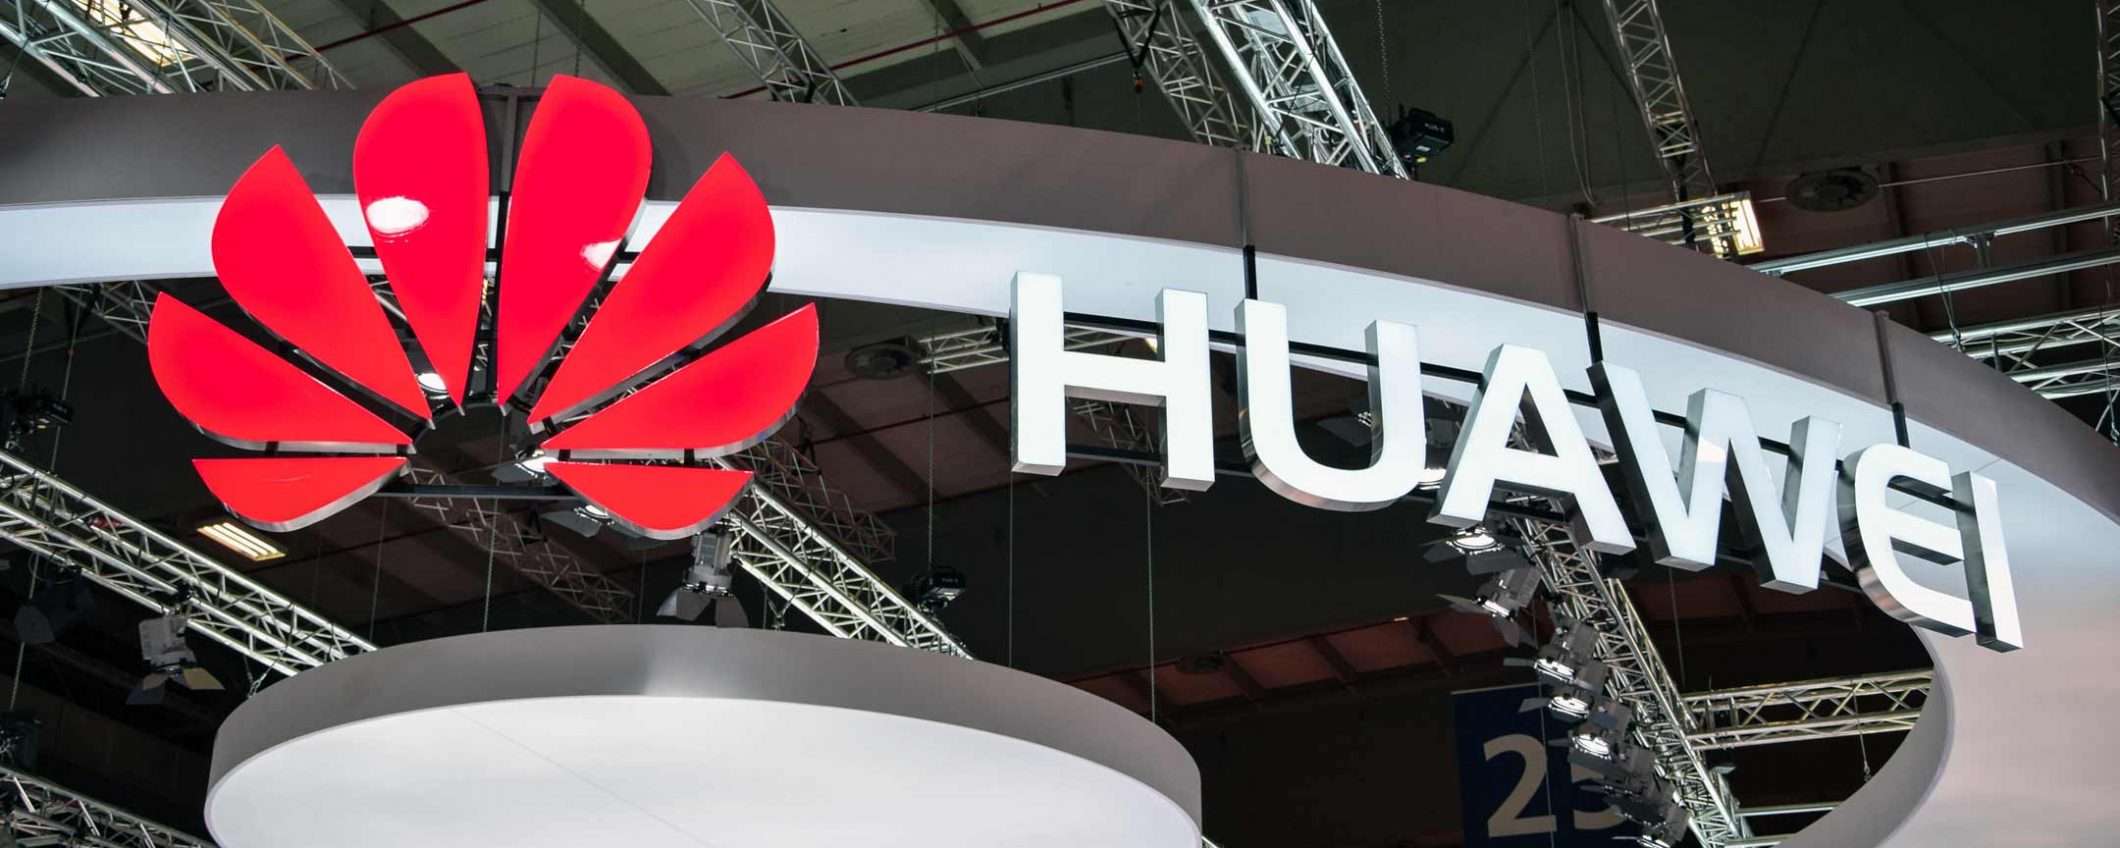 Nuove accuse di spionaggio per Huawei